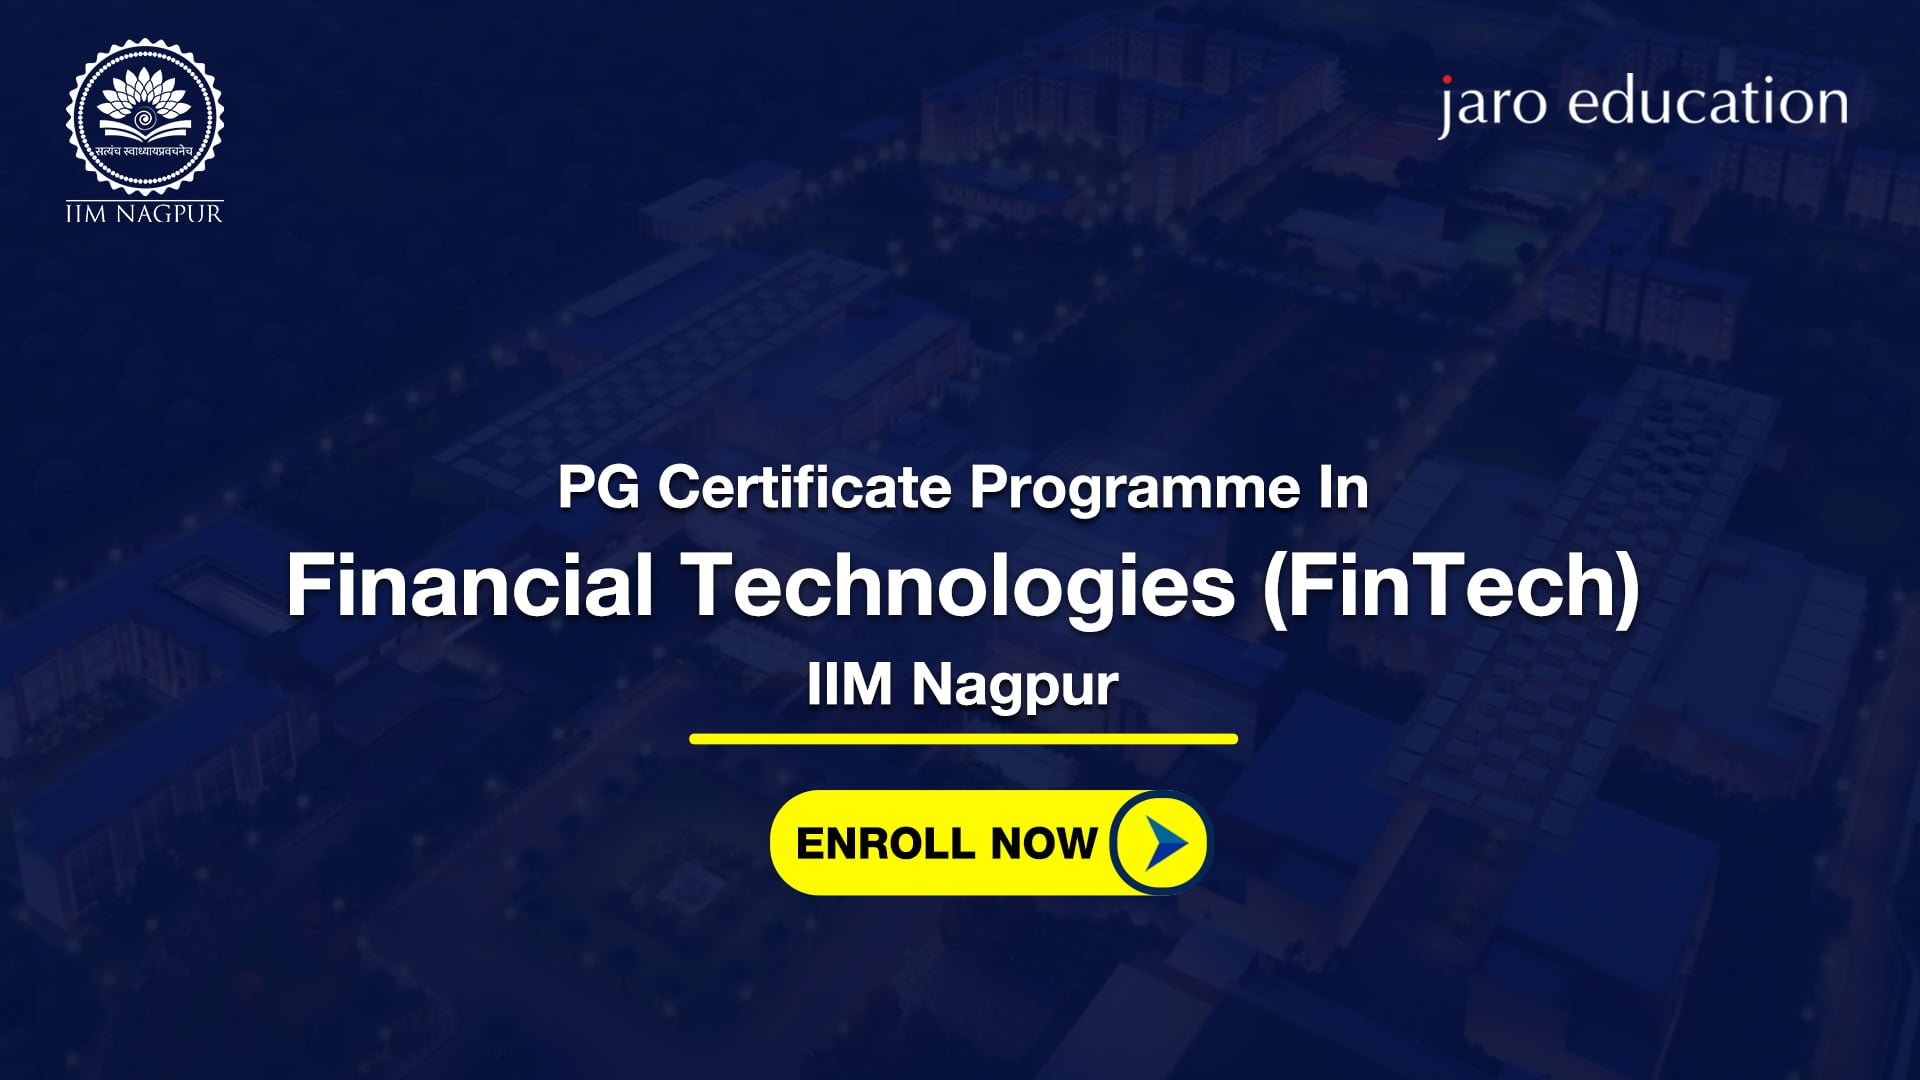 FinTech - IIM Nagpur